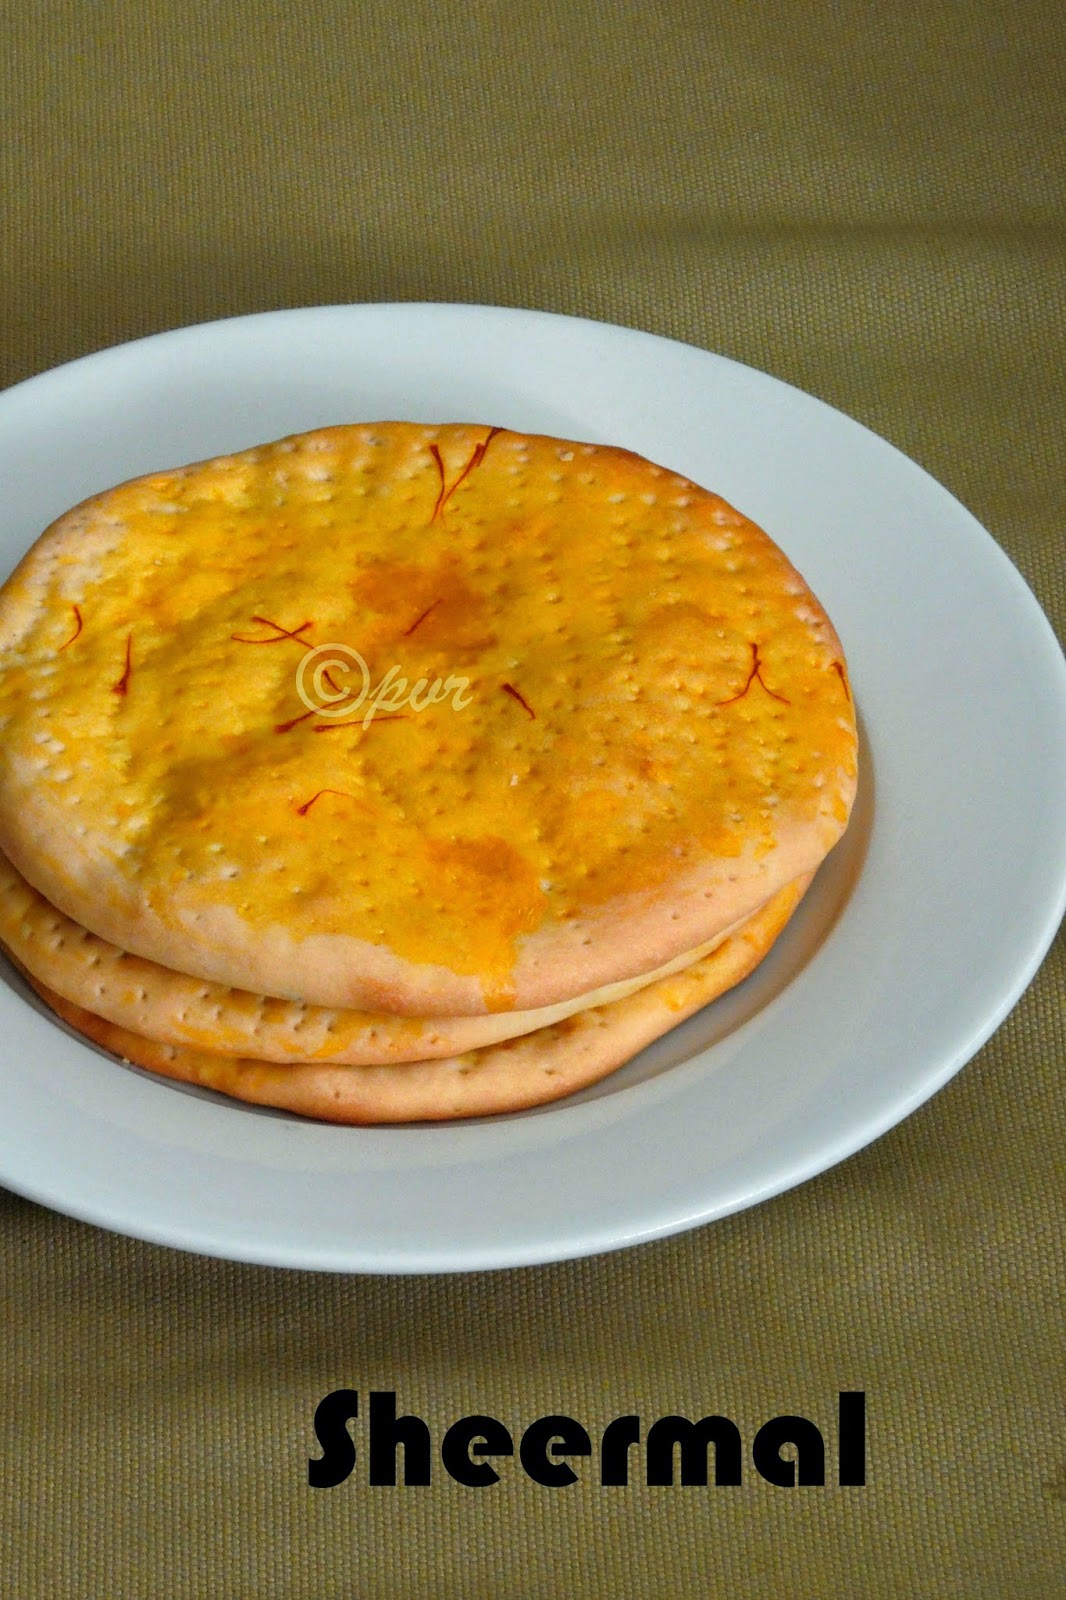 Sheermal, saffron flavoured flatbread